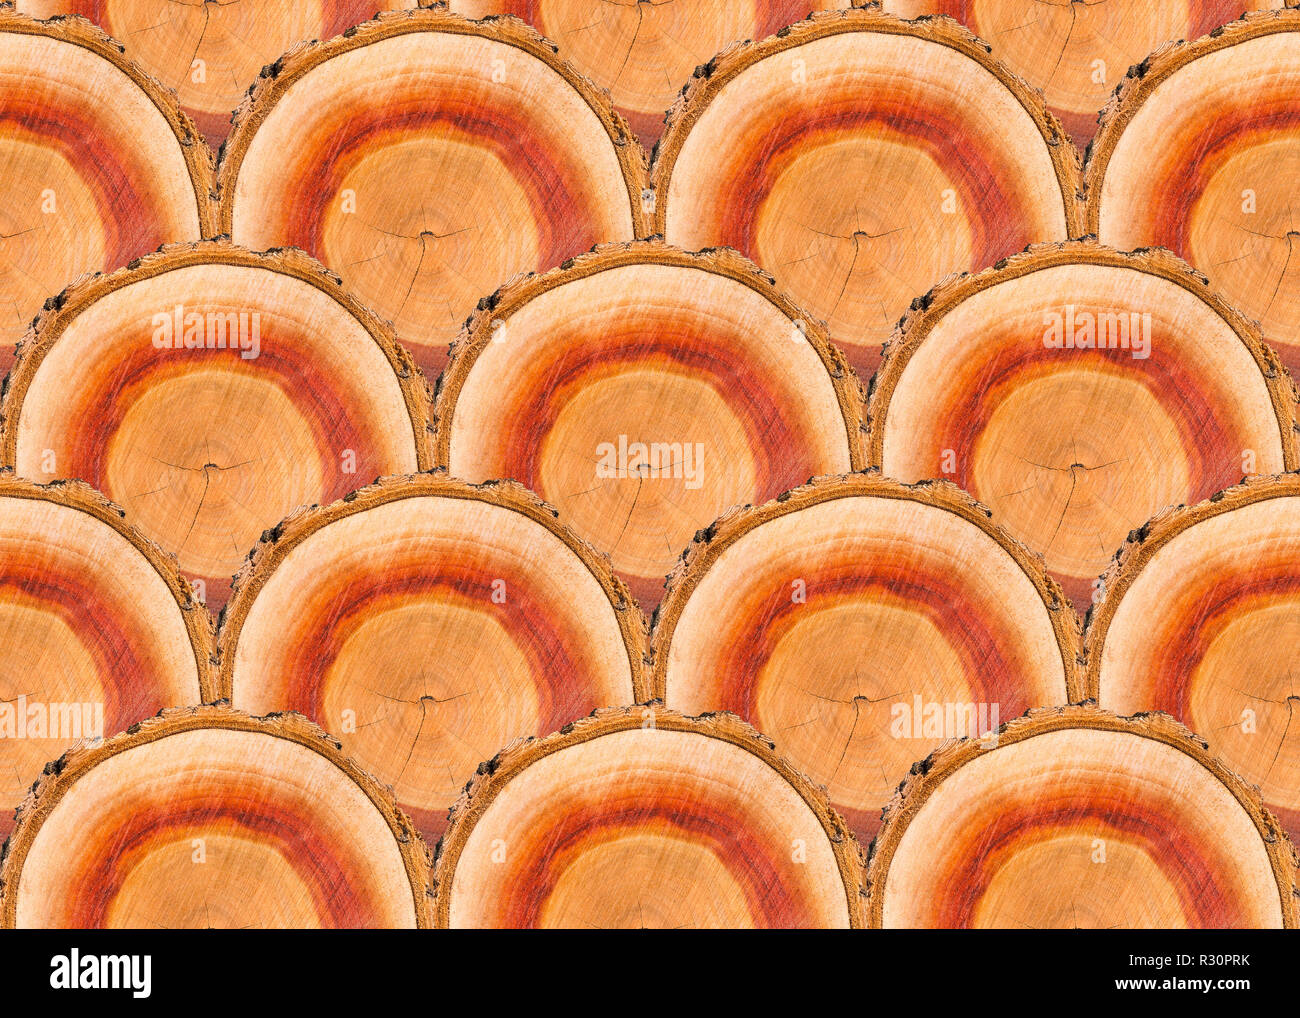 Nahtlose Muster von vielen ähnlichen Aprikosenbaum Holzschnitt Stücke Stockfoto